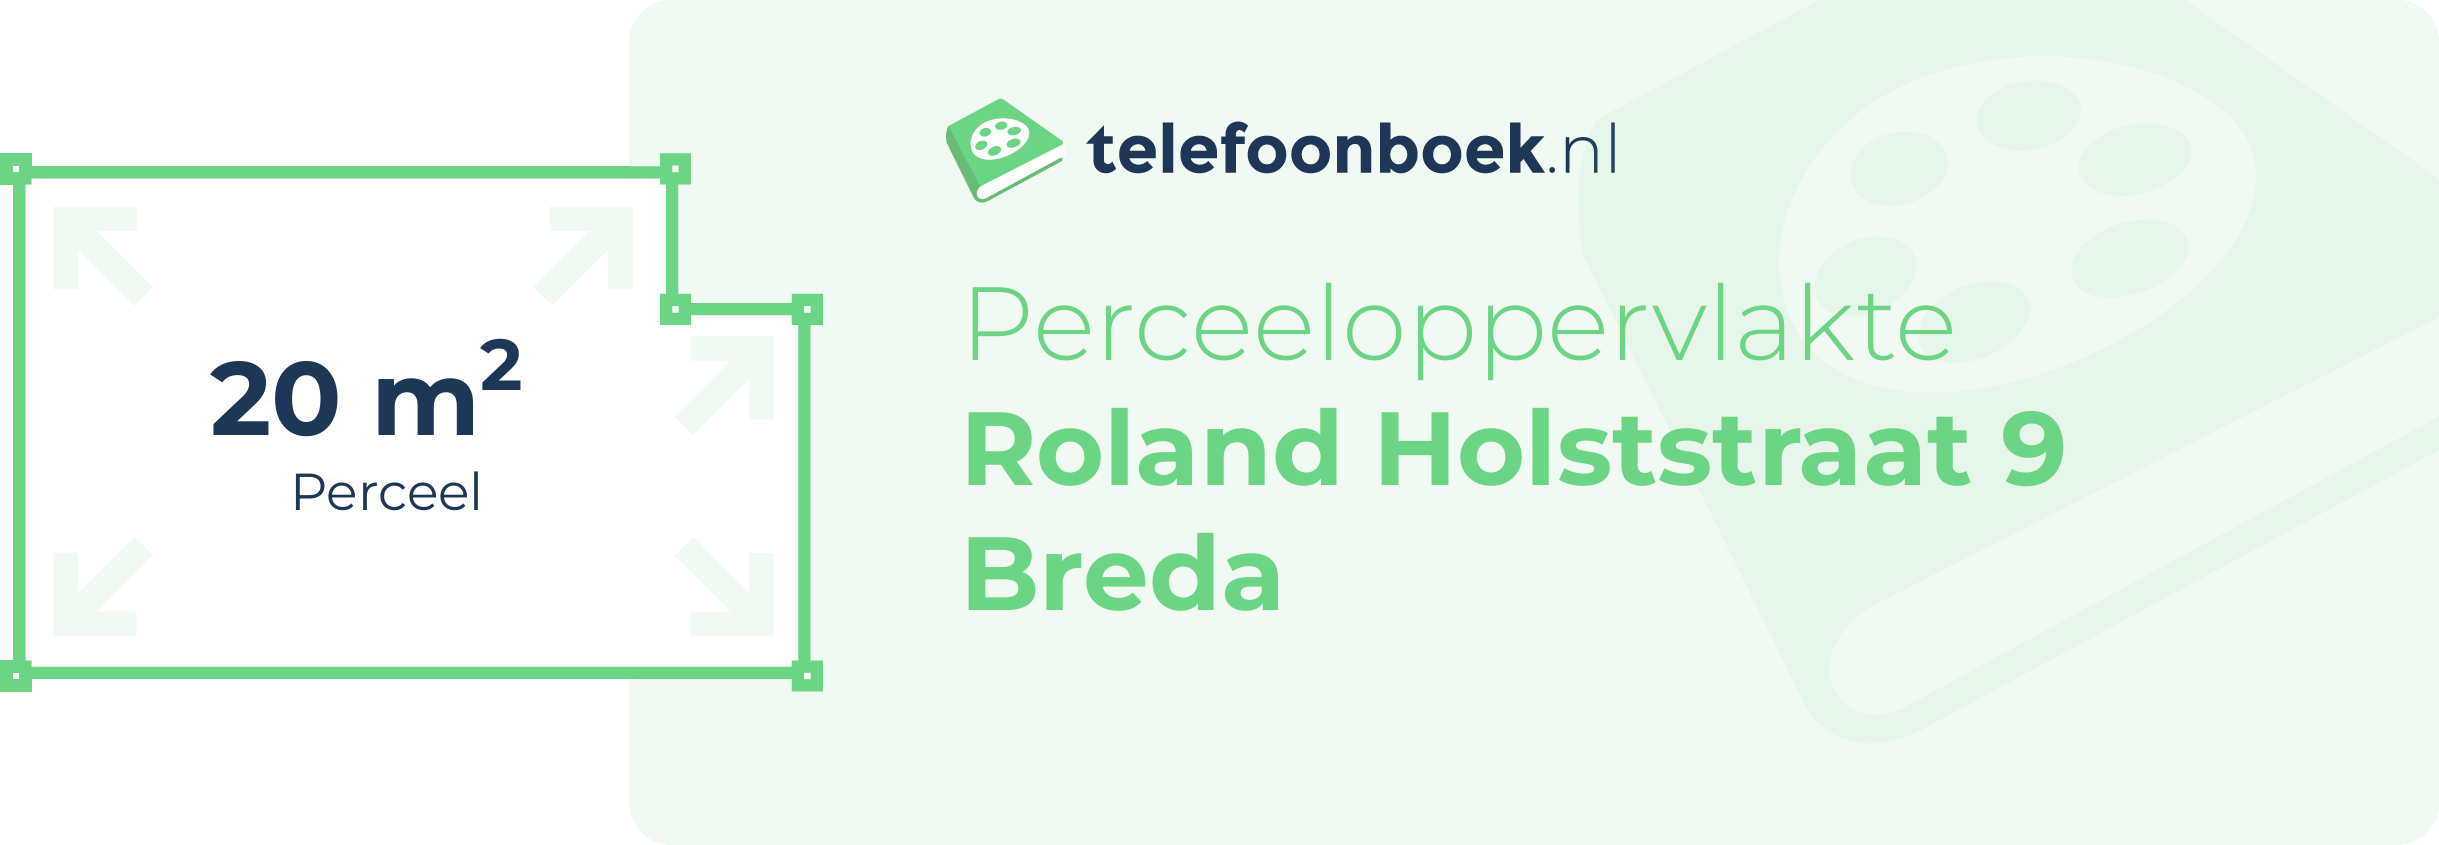 Perceeloppervlakte Roland Holststraat 9 Breda